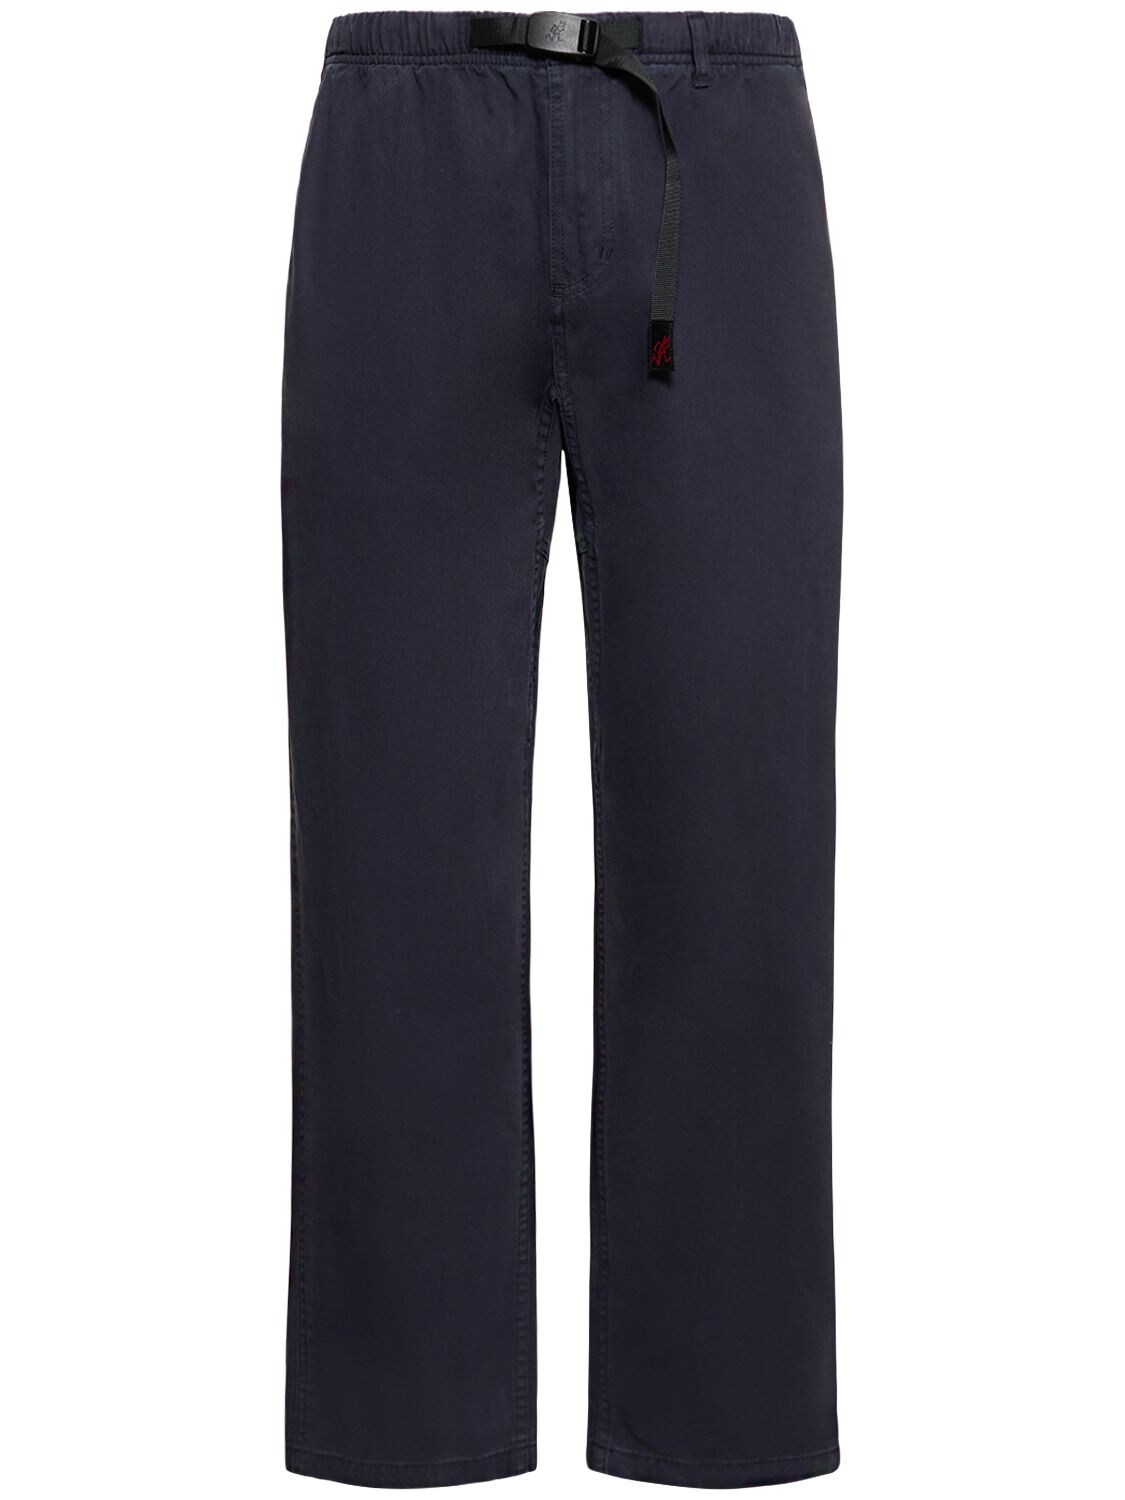 GRAMICCI CLASSIC ORGANIC COTTON TWILL trousers